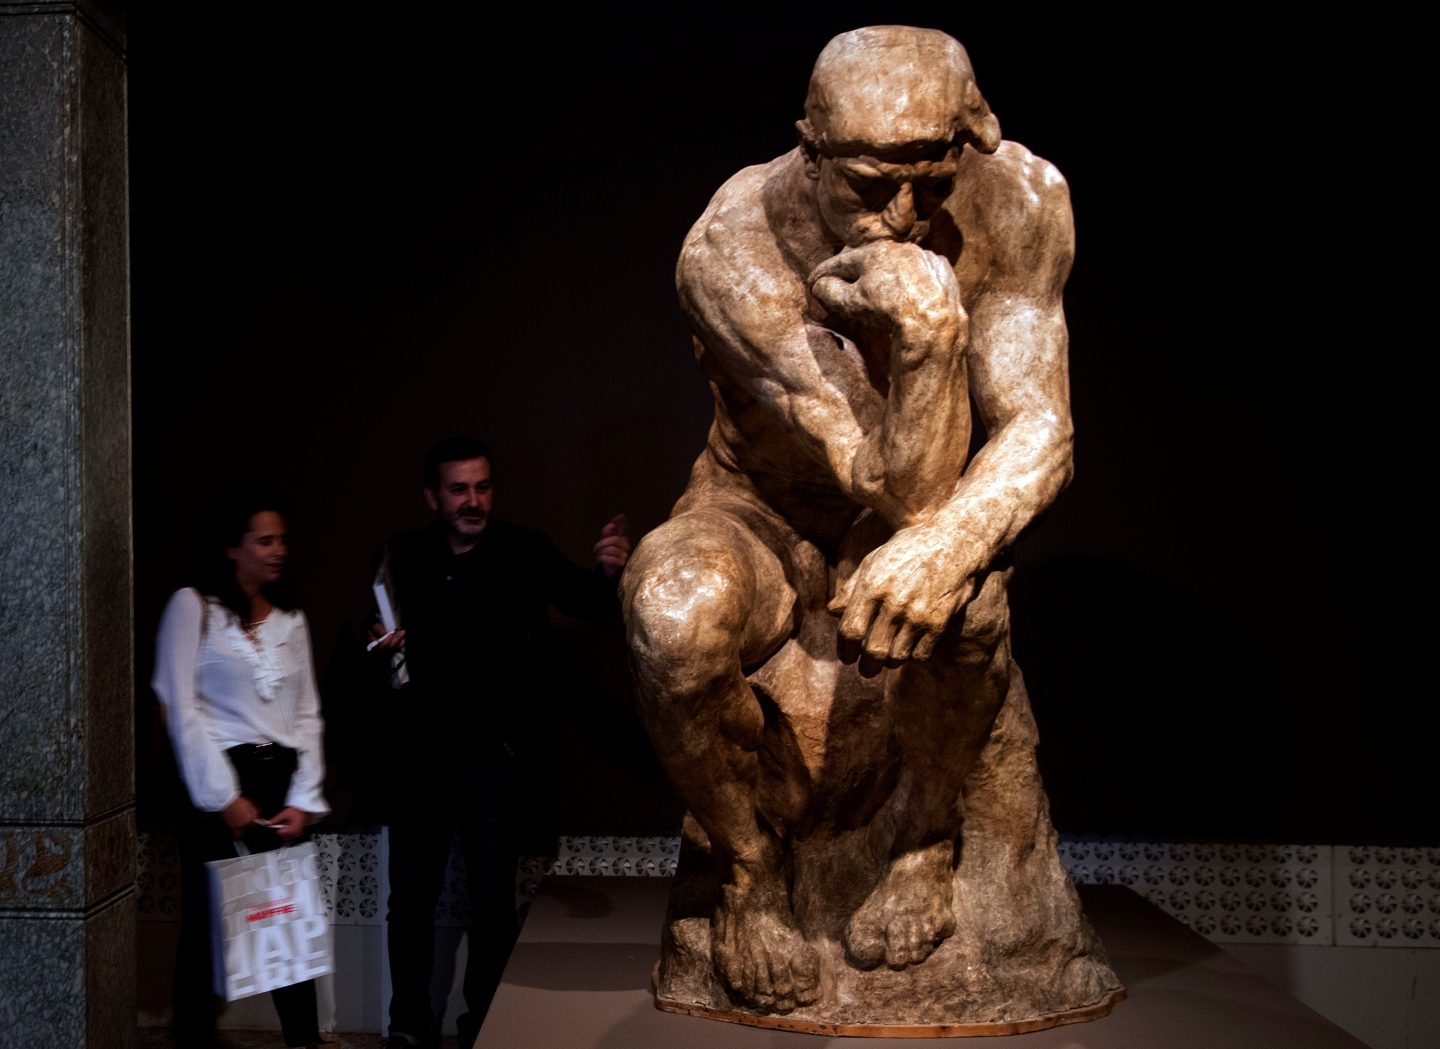 Versión de la obra 'El pensador', de Rodin.